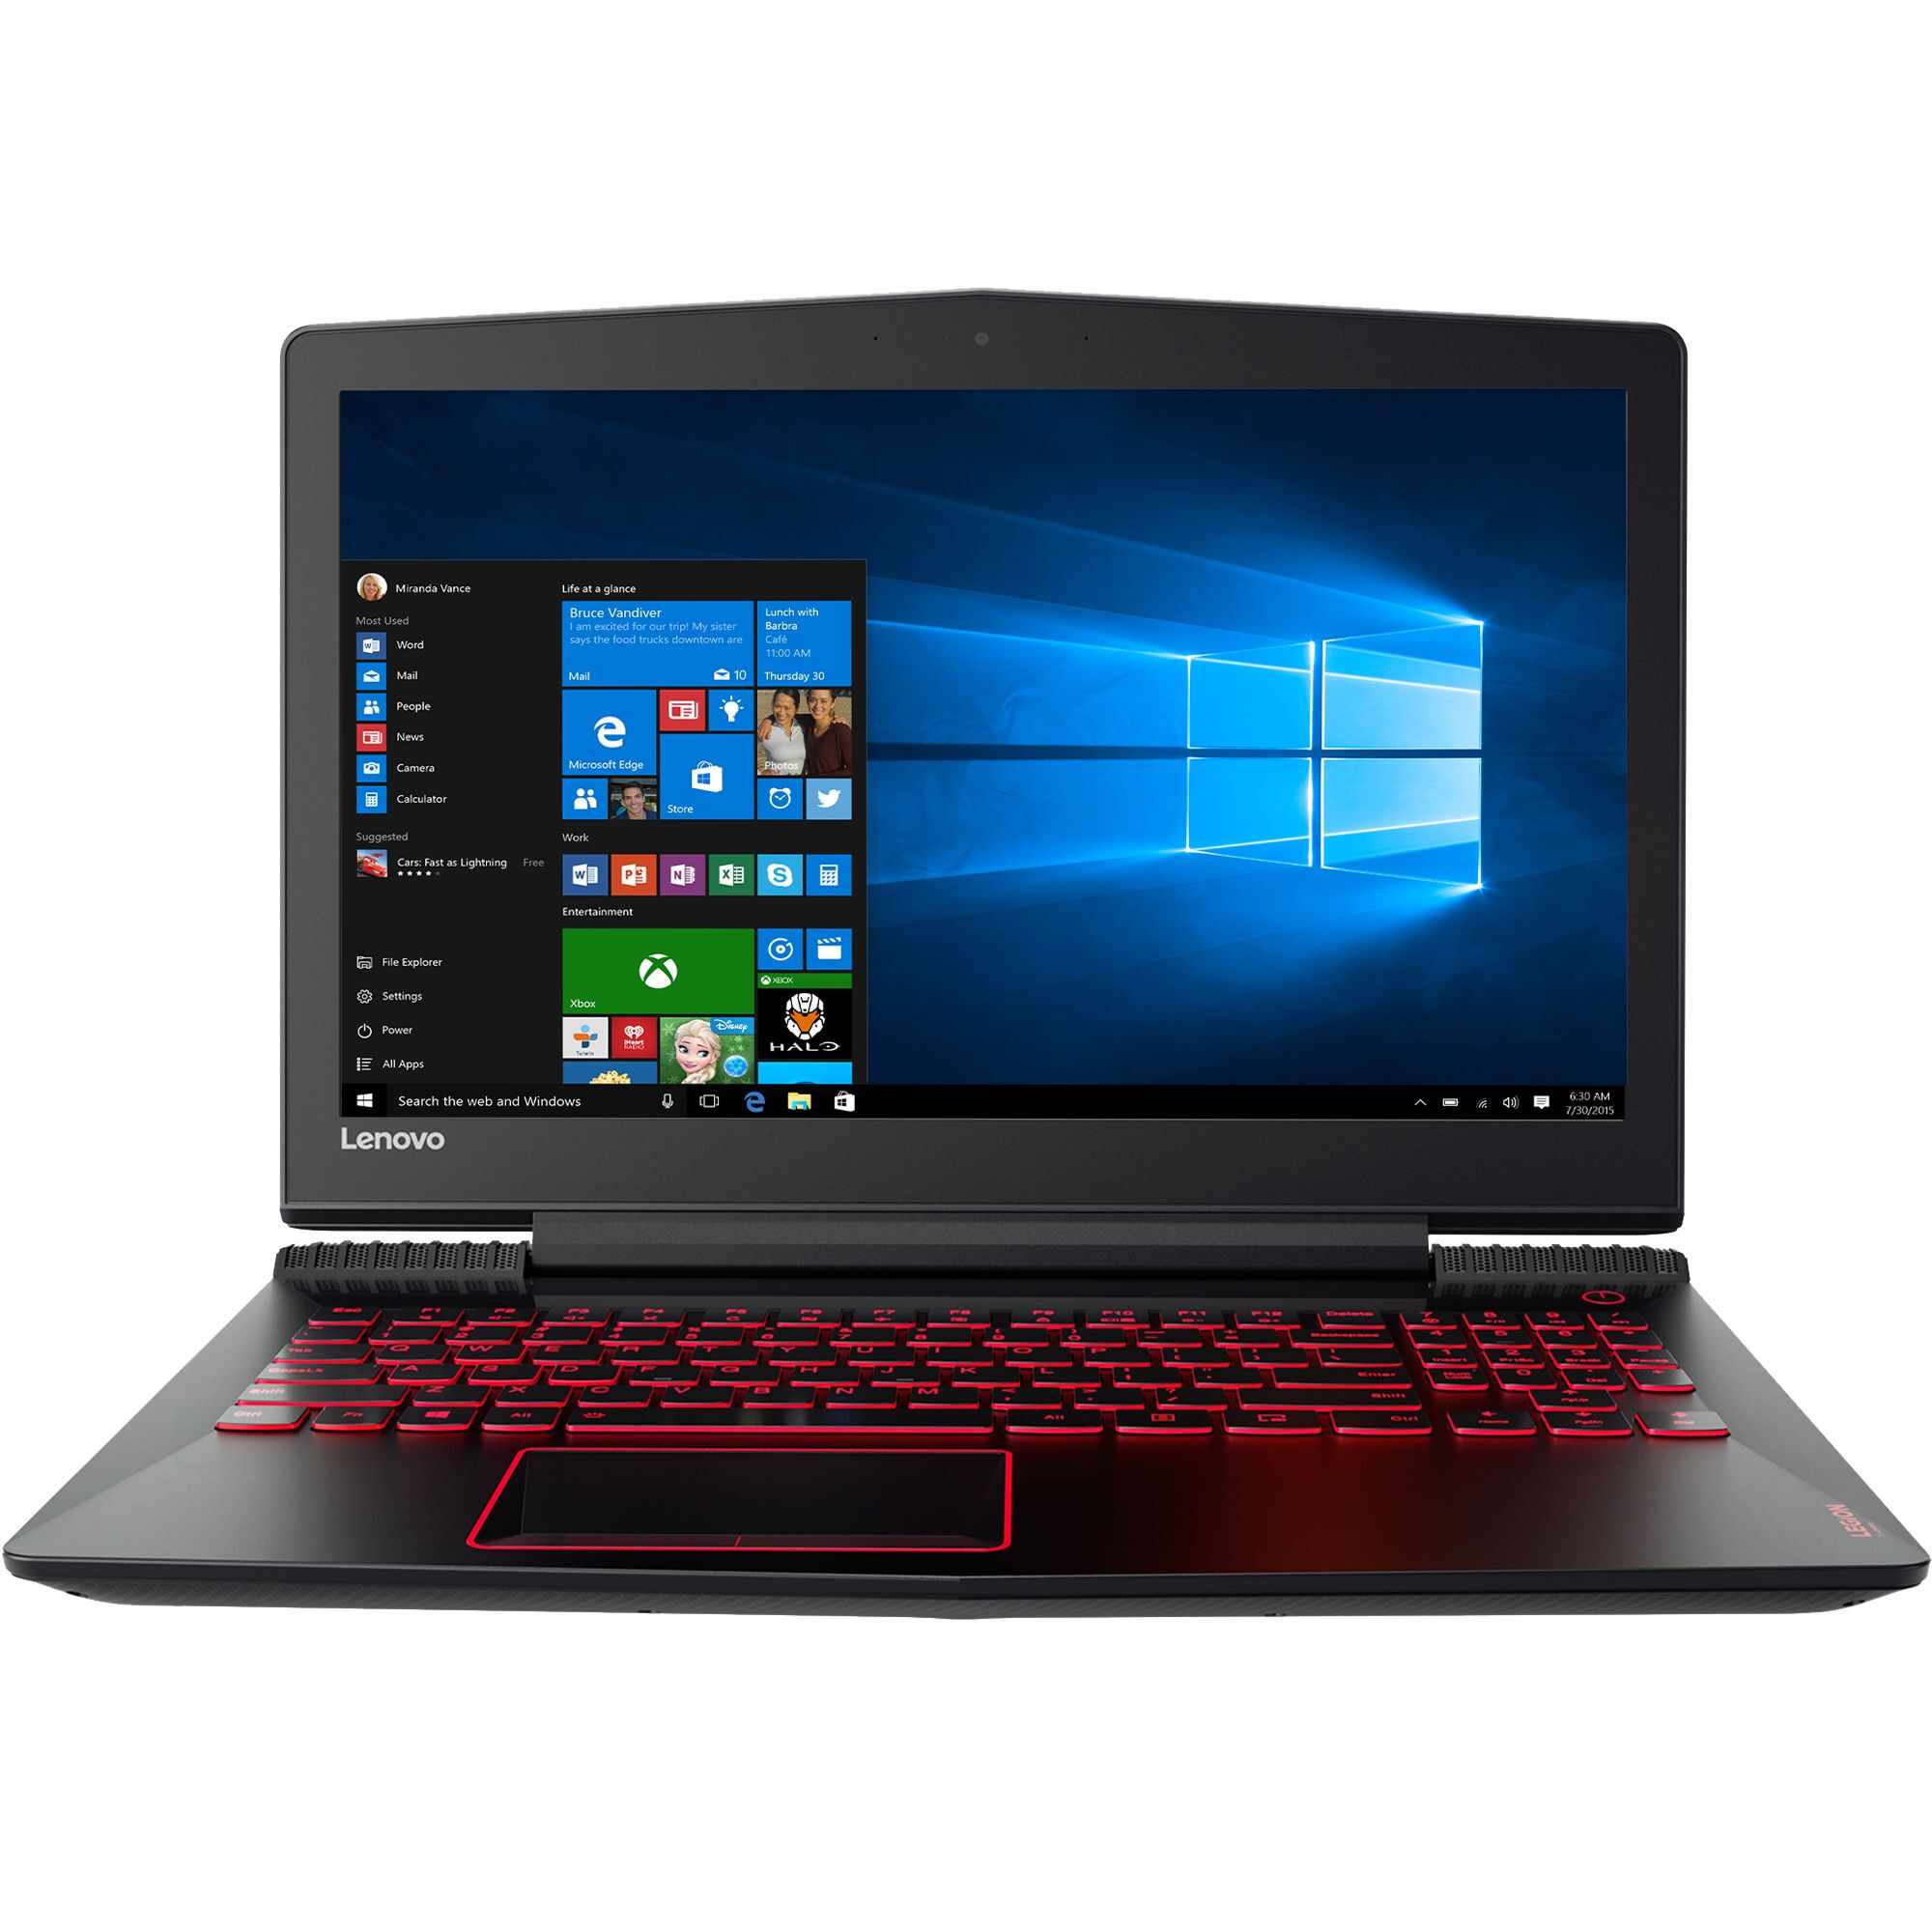 Laptop Gaming Lenovo Legion Y520-15IKBN, Intel Core i7-7700HQ, 8GB DDR4, SSD 512GB, nVidia GeForce GTX 1050 4GB, Windows 10 Home